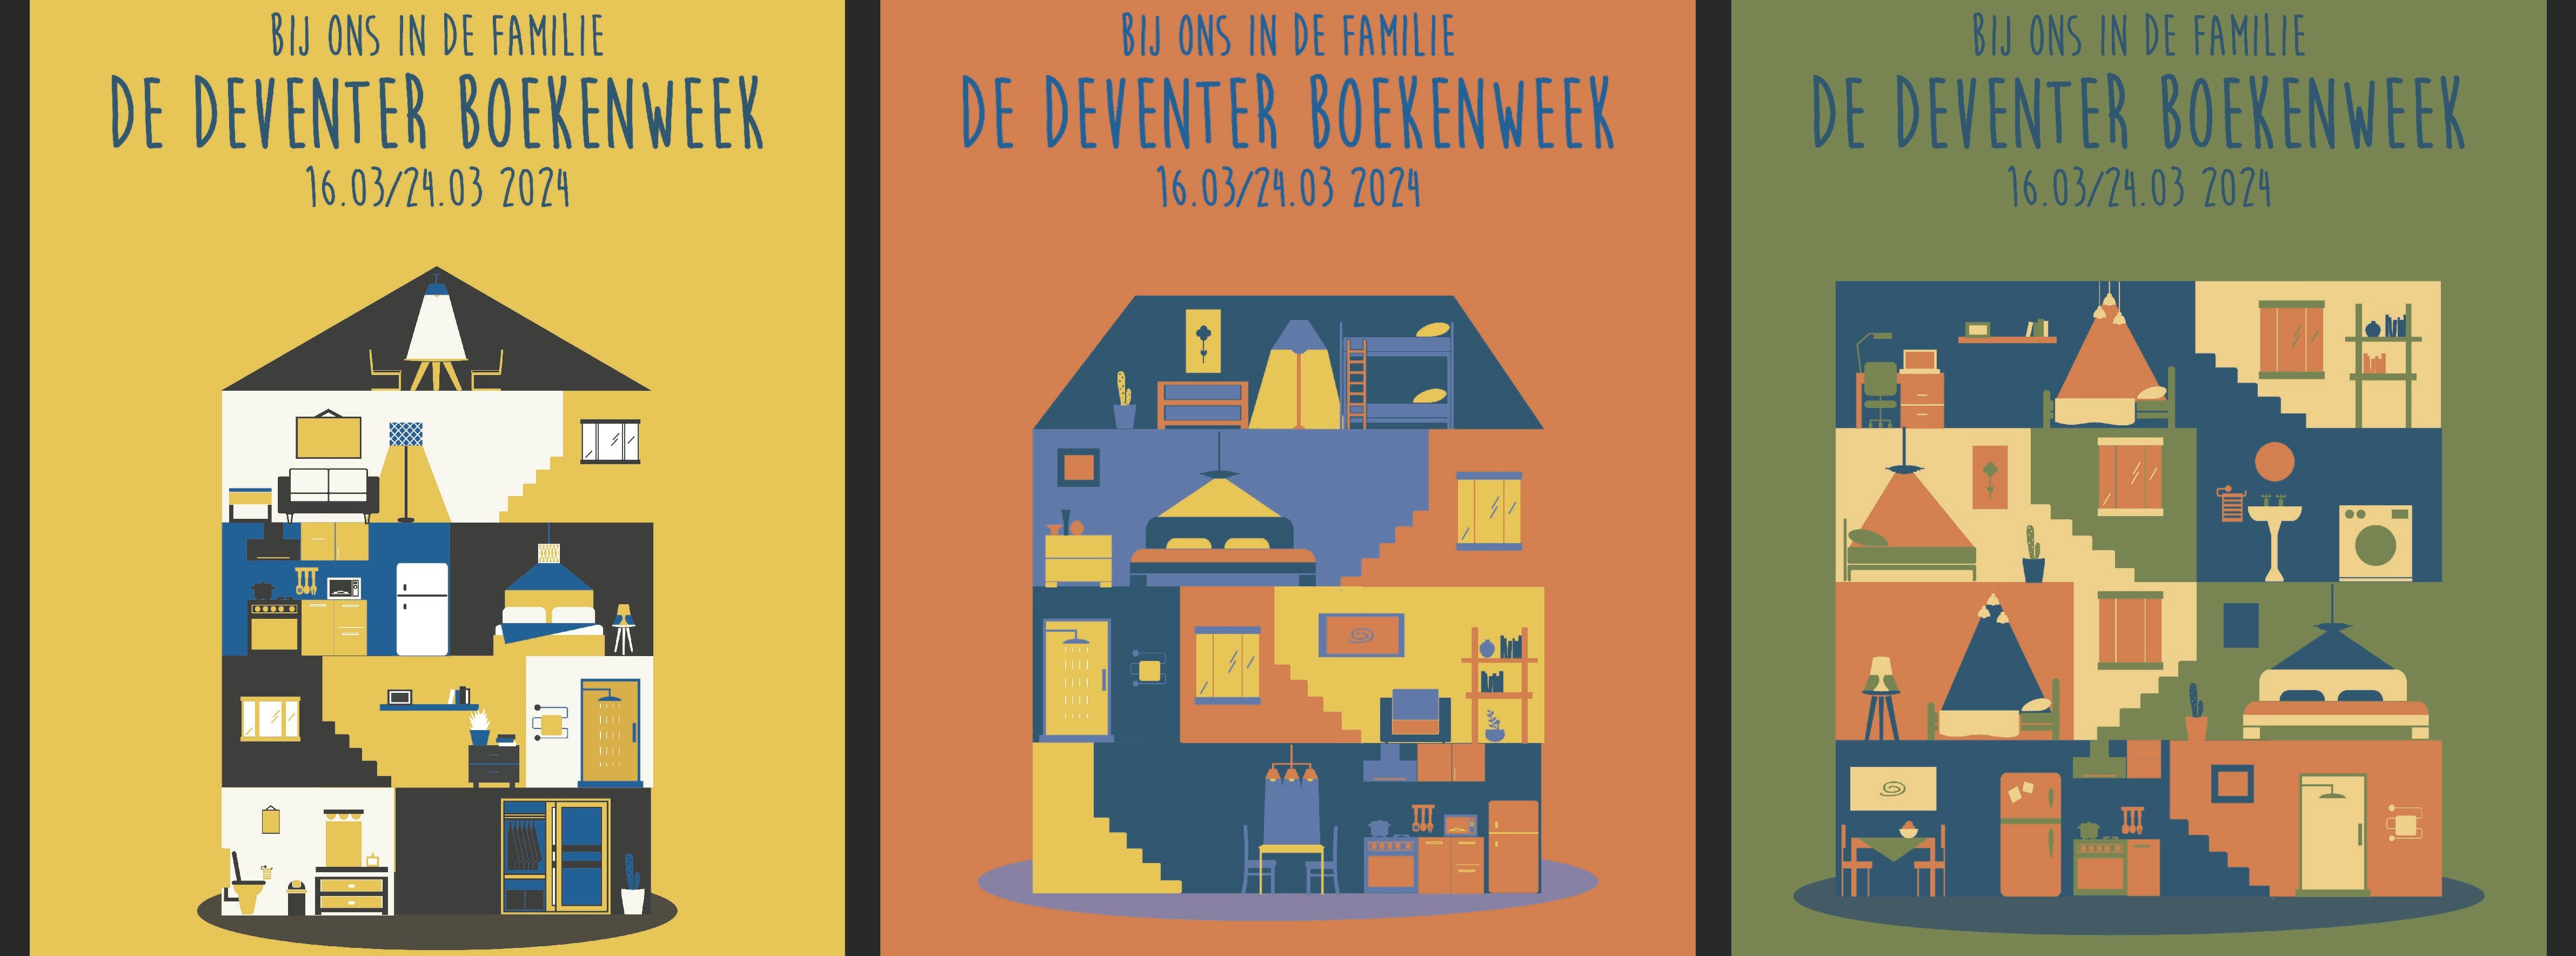 Gezocht: Penningmeester voor Stichting Deventer Boekenweek